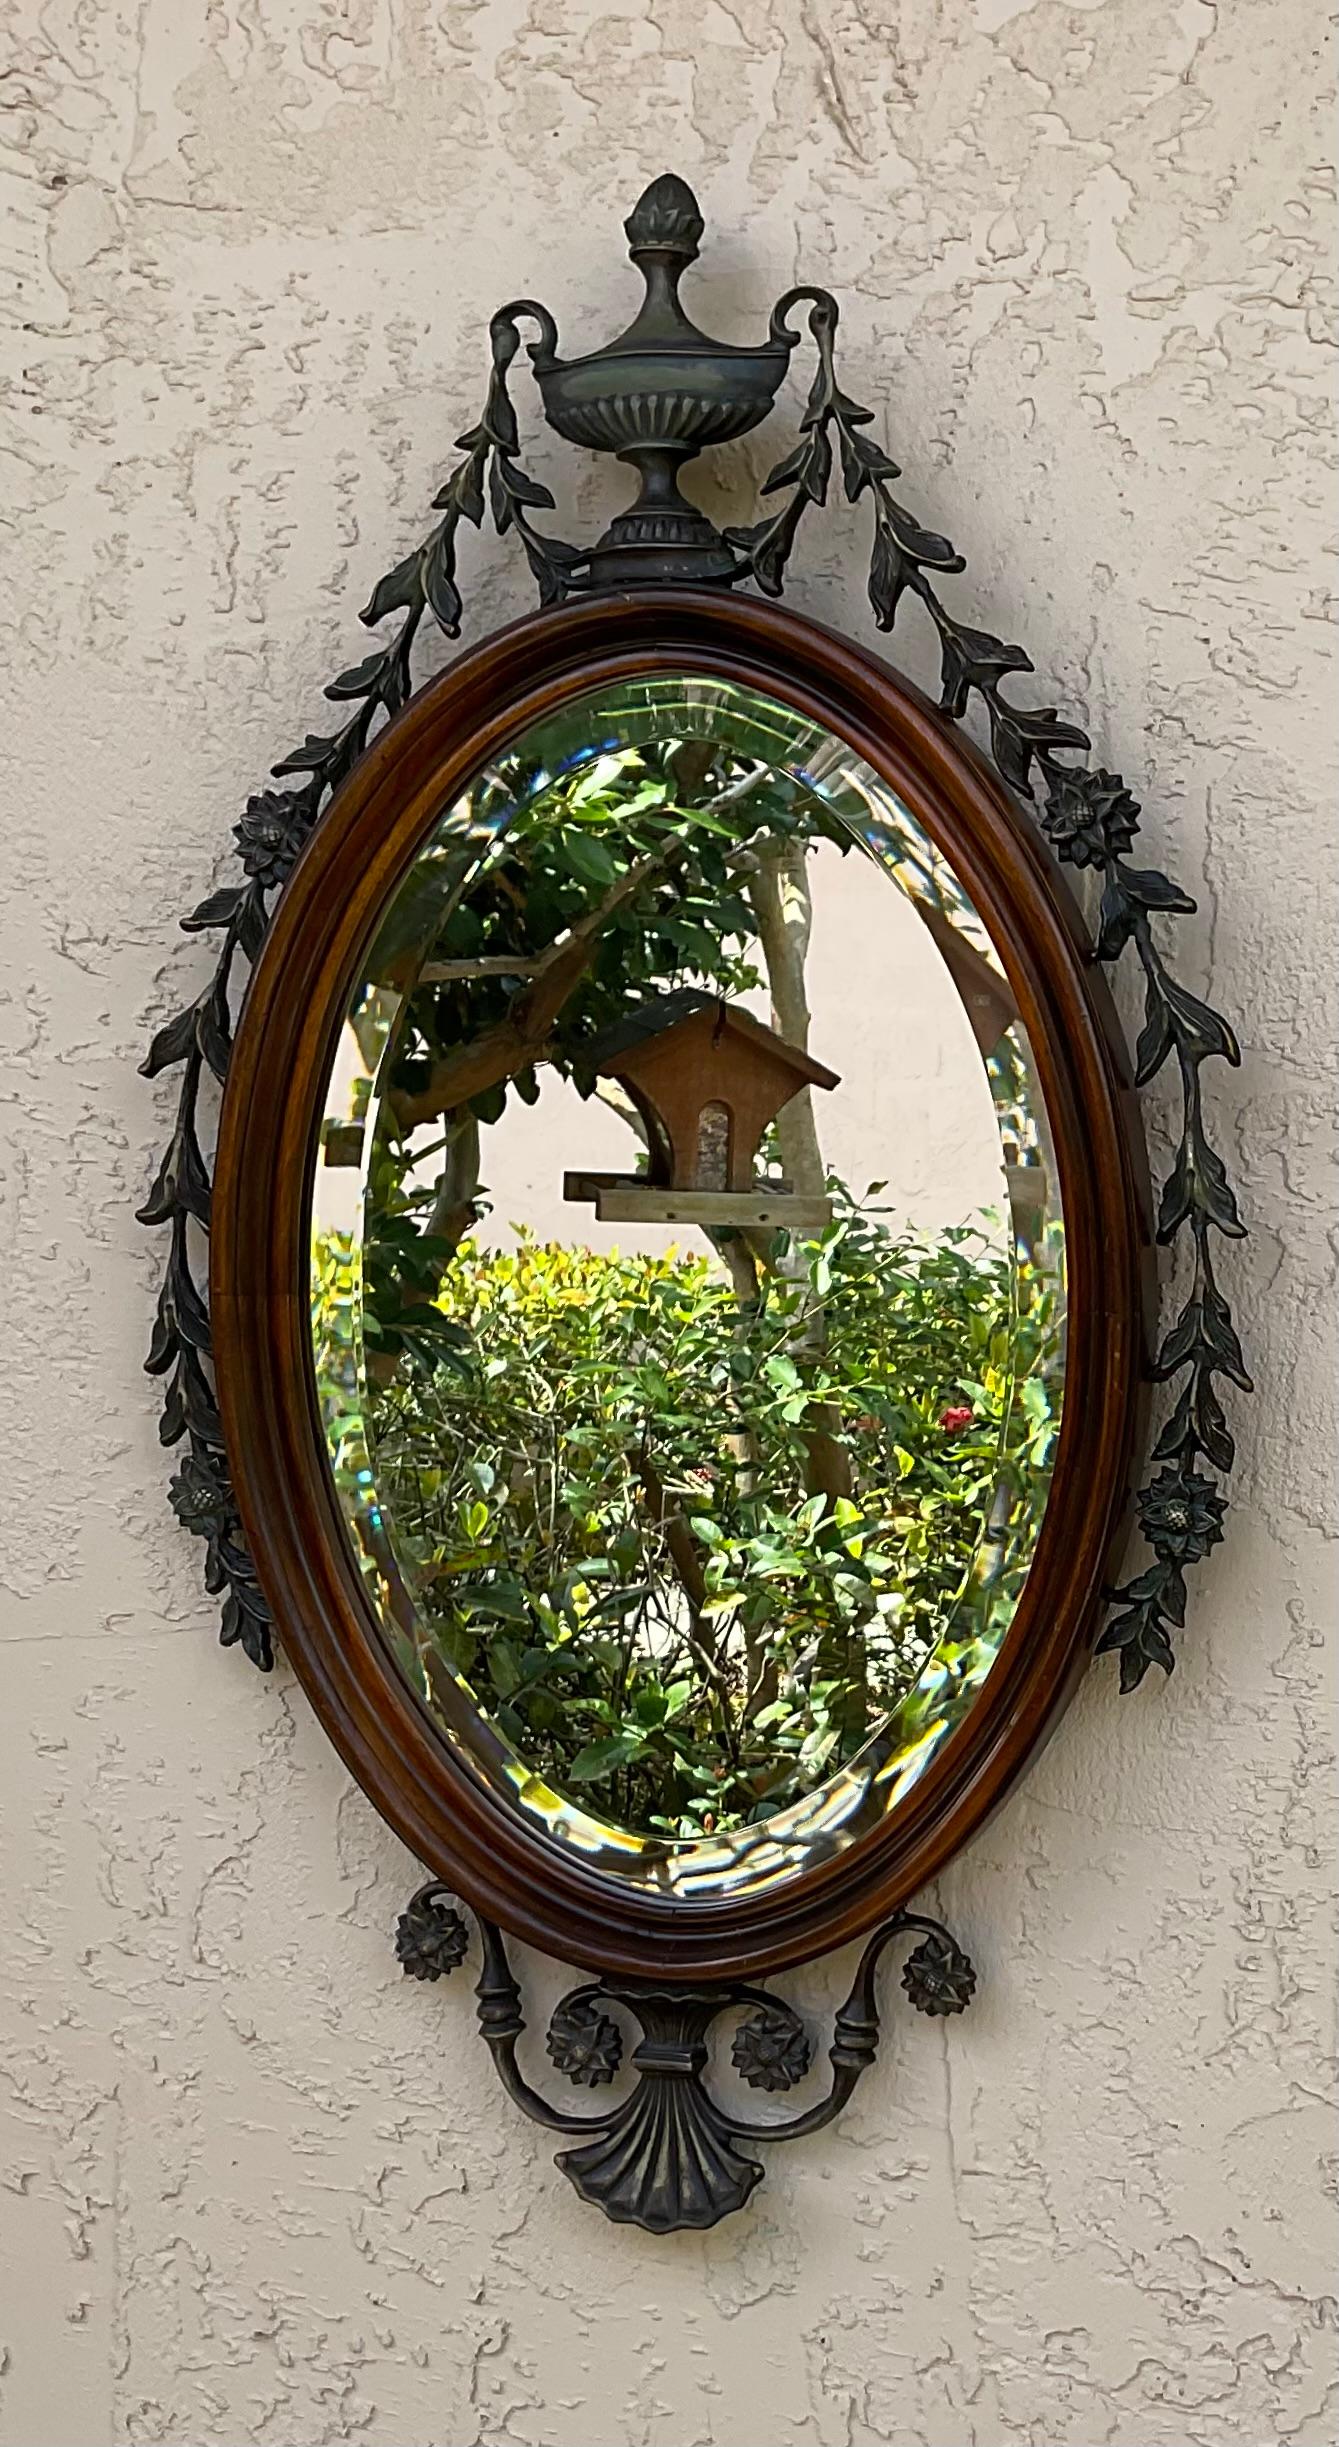 Elegante Wand hängen handgeschnitzten Holzspiegel, mit Bronze Blumen und Wein Dekoration um, dicke abgeschrägte Spiegel. 
Tolle Ergänzung für jede Wand im Haus 
Tatsächliche Glasgröße 